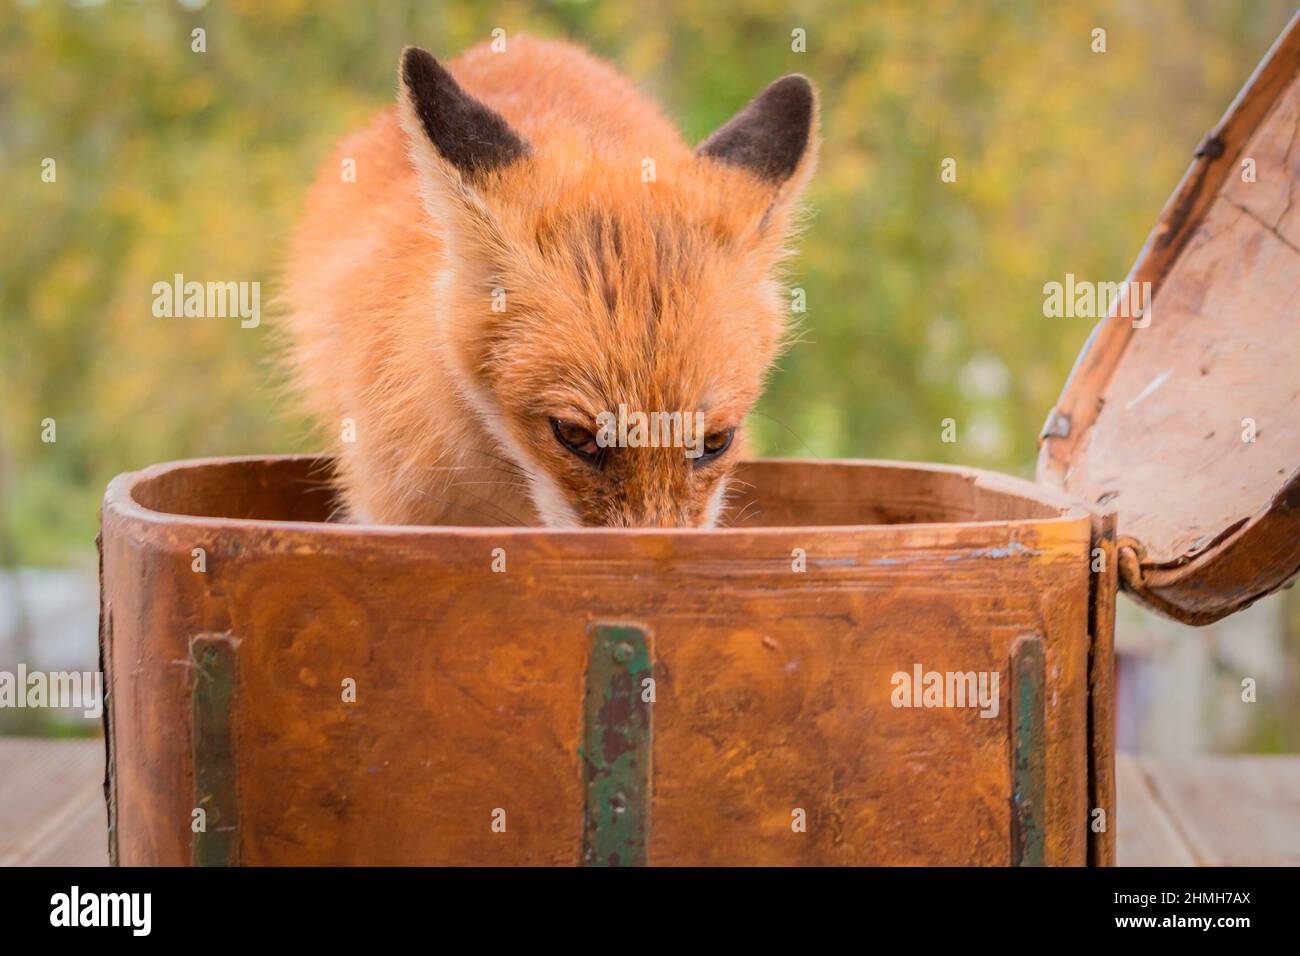 volpe rossa che guarda alla fotocamera dall'interno di una scatola Foto Stock